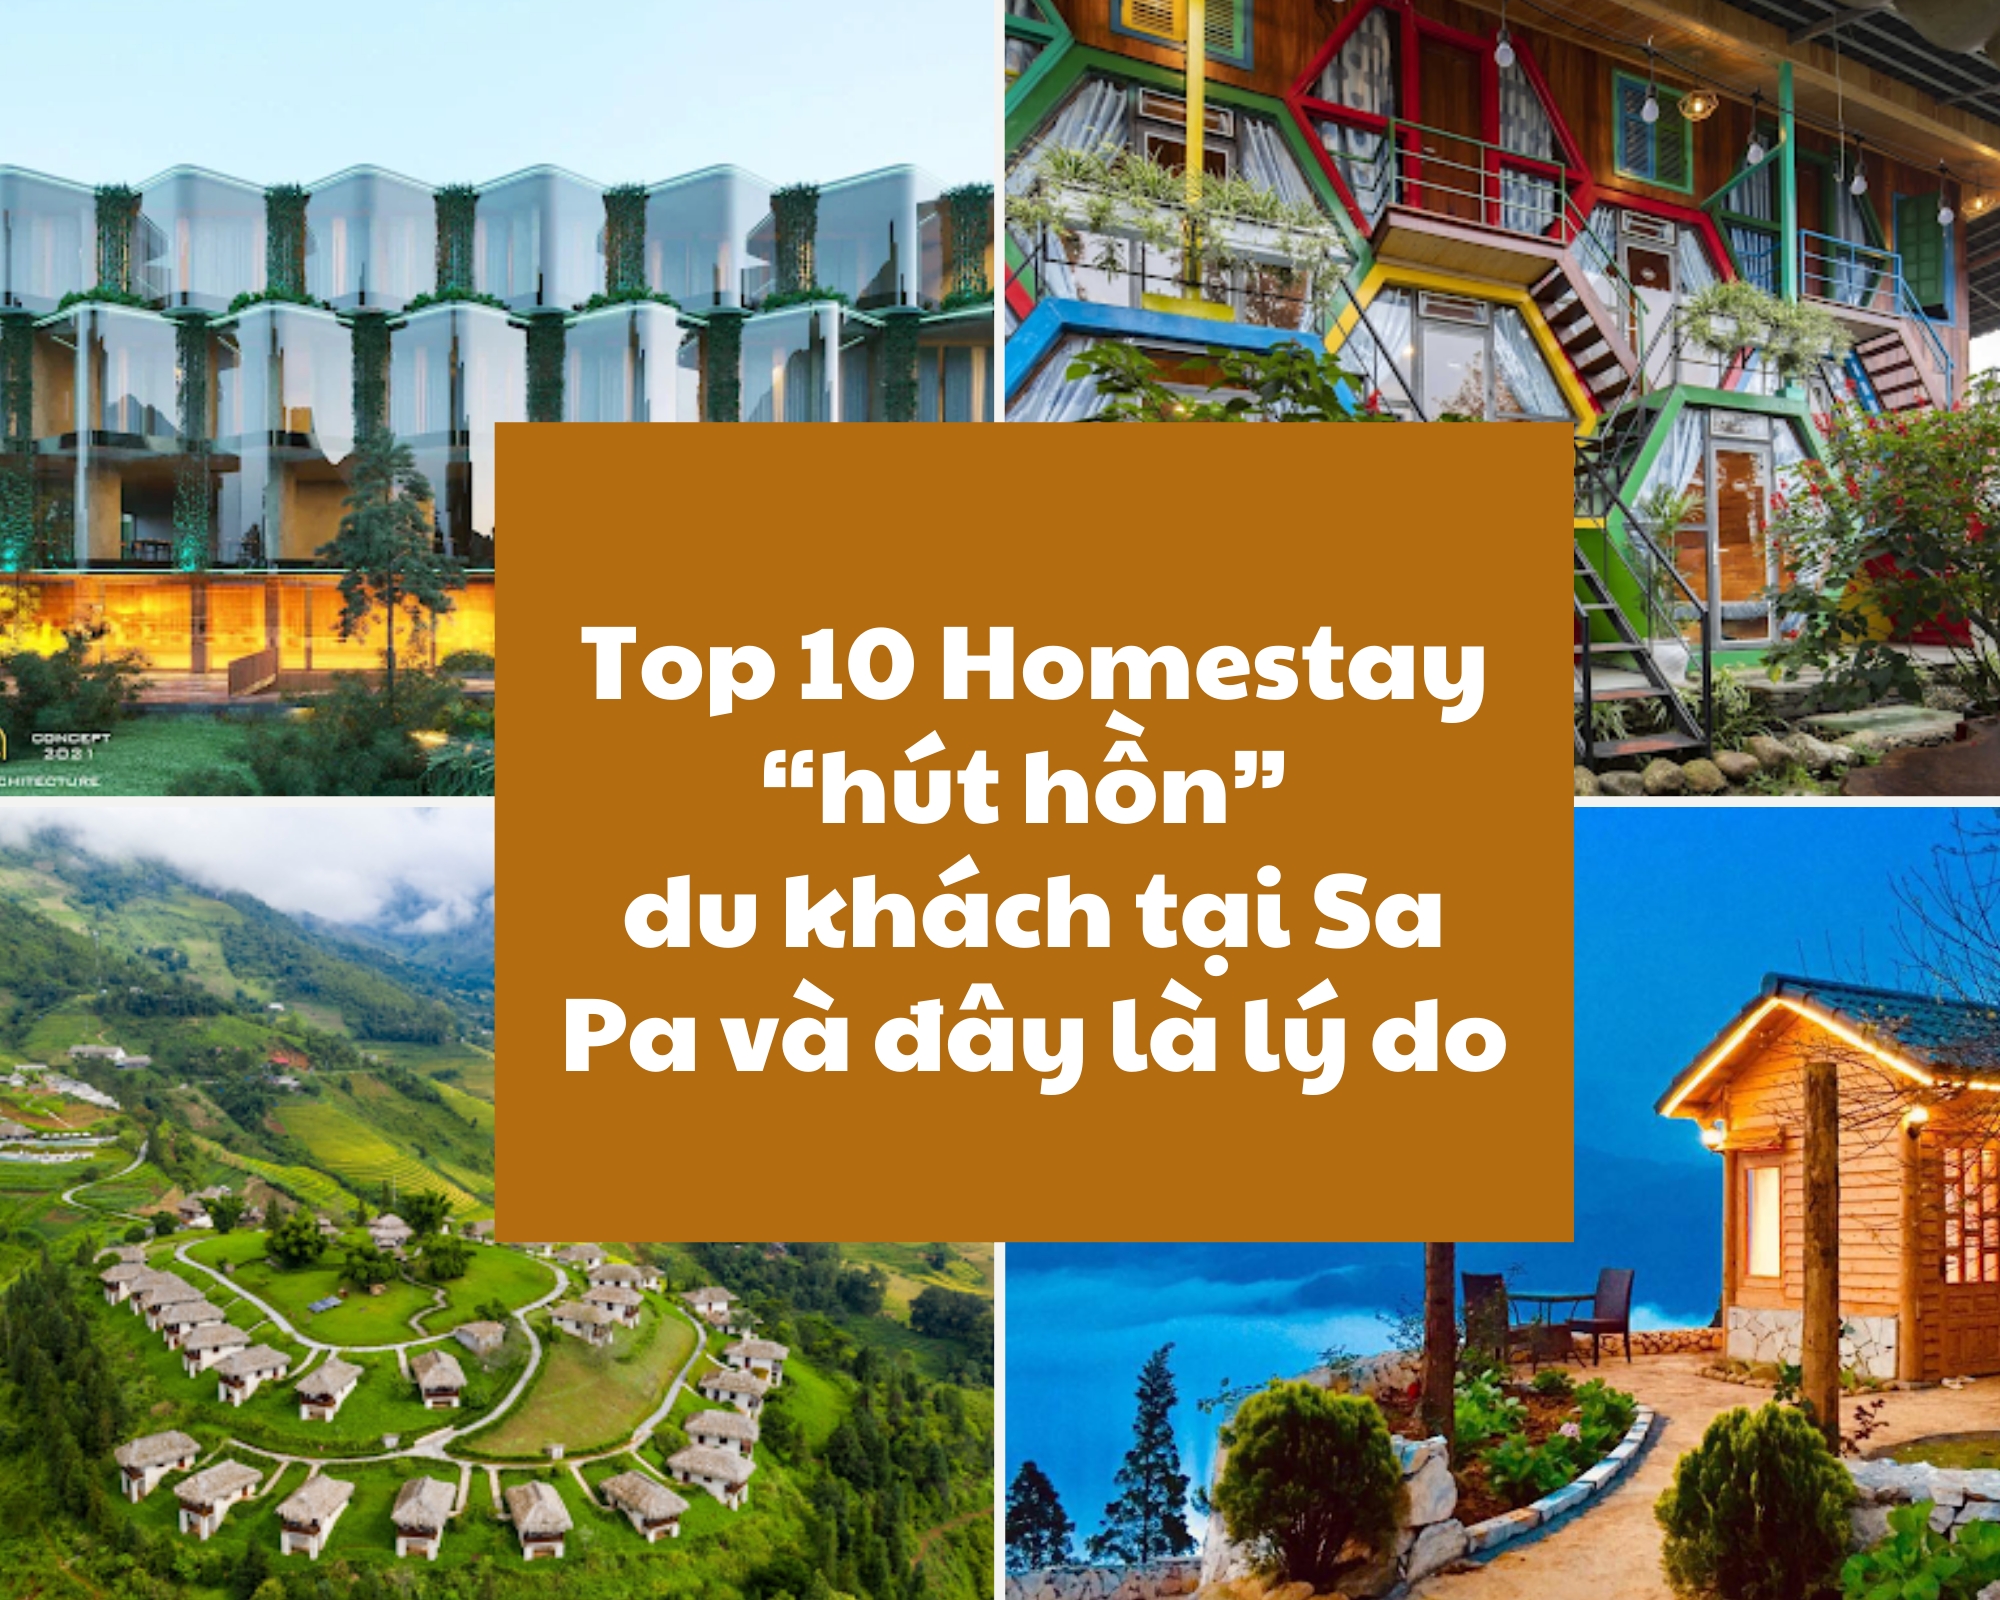 Top 10 Homestay “hút hồn” du khách tại Sa Pa và đây là lý do (Phần 2)